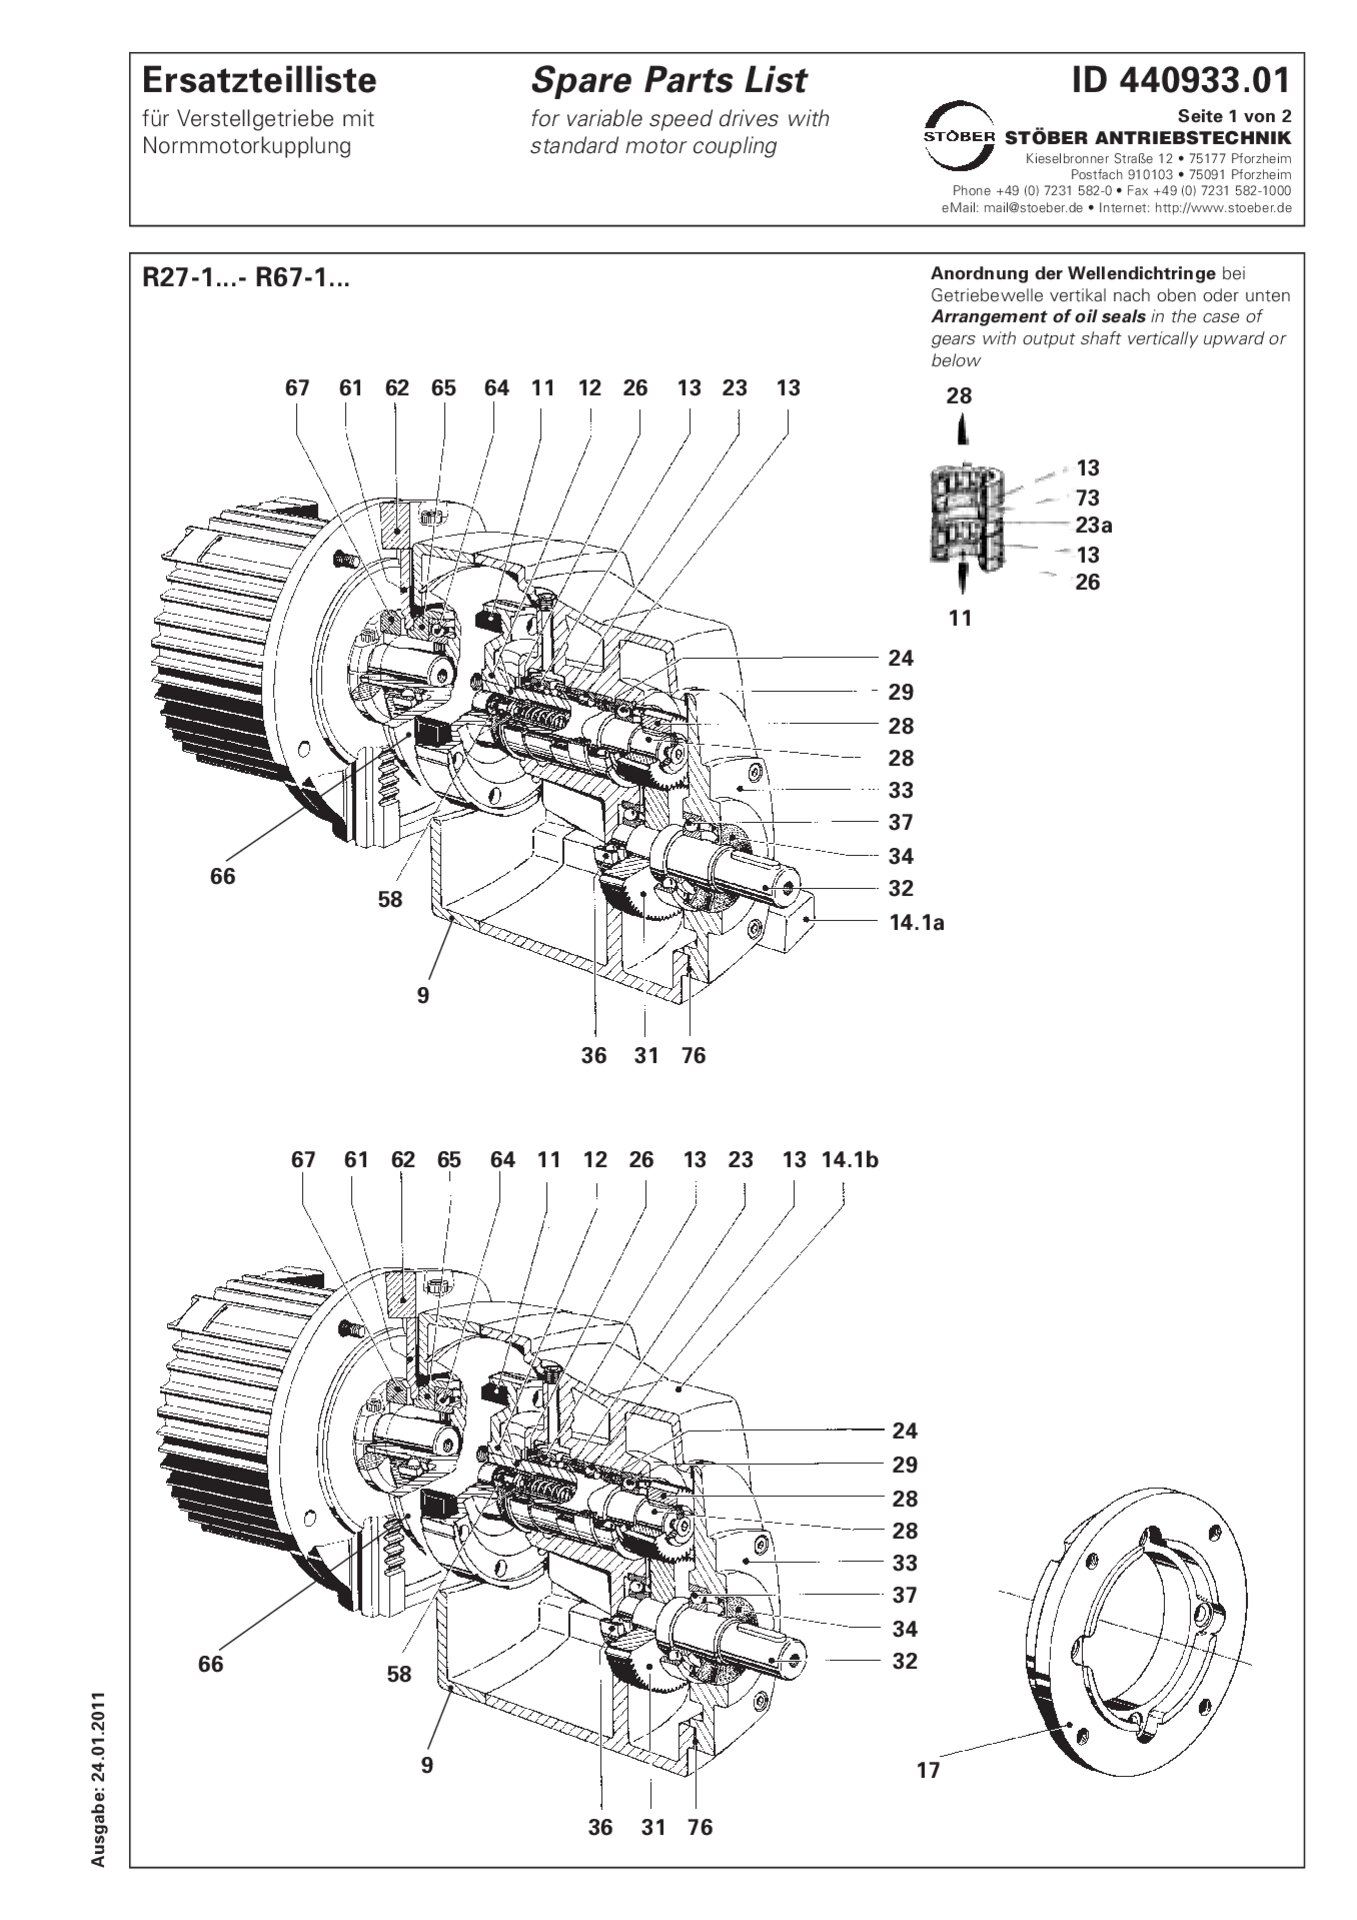 Listino dei pezzi di ricambio R27-1/R37-1/R47-1/R57-1/R67-1 con accoppiamento motore standard